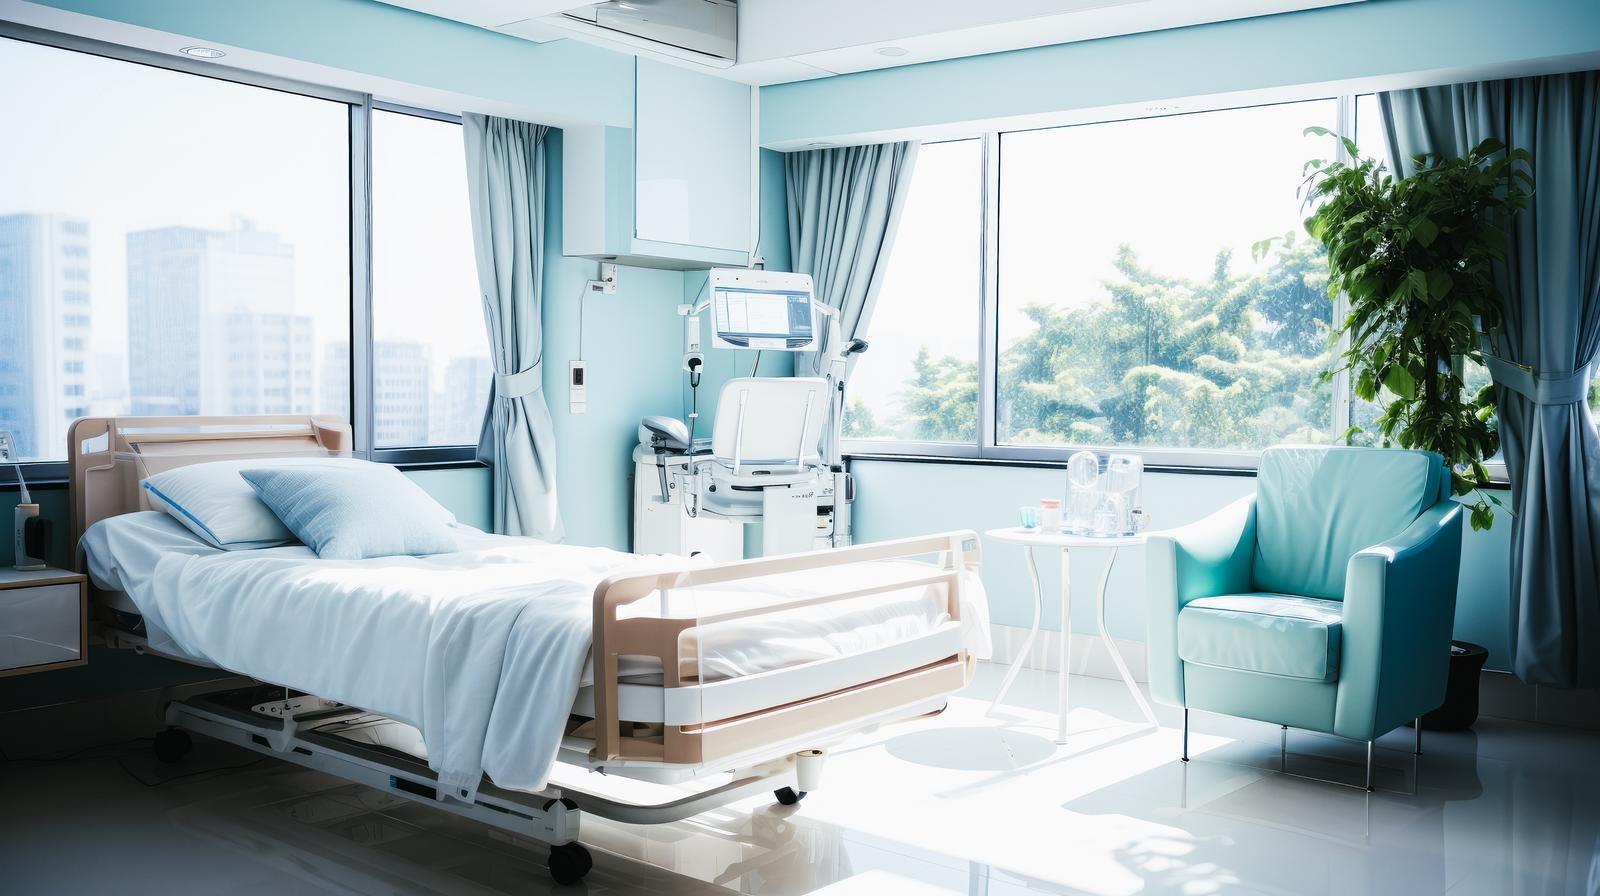 「医療機器が設置されたクリニックの病室」の写真